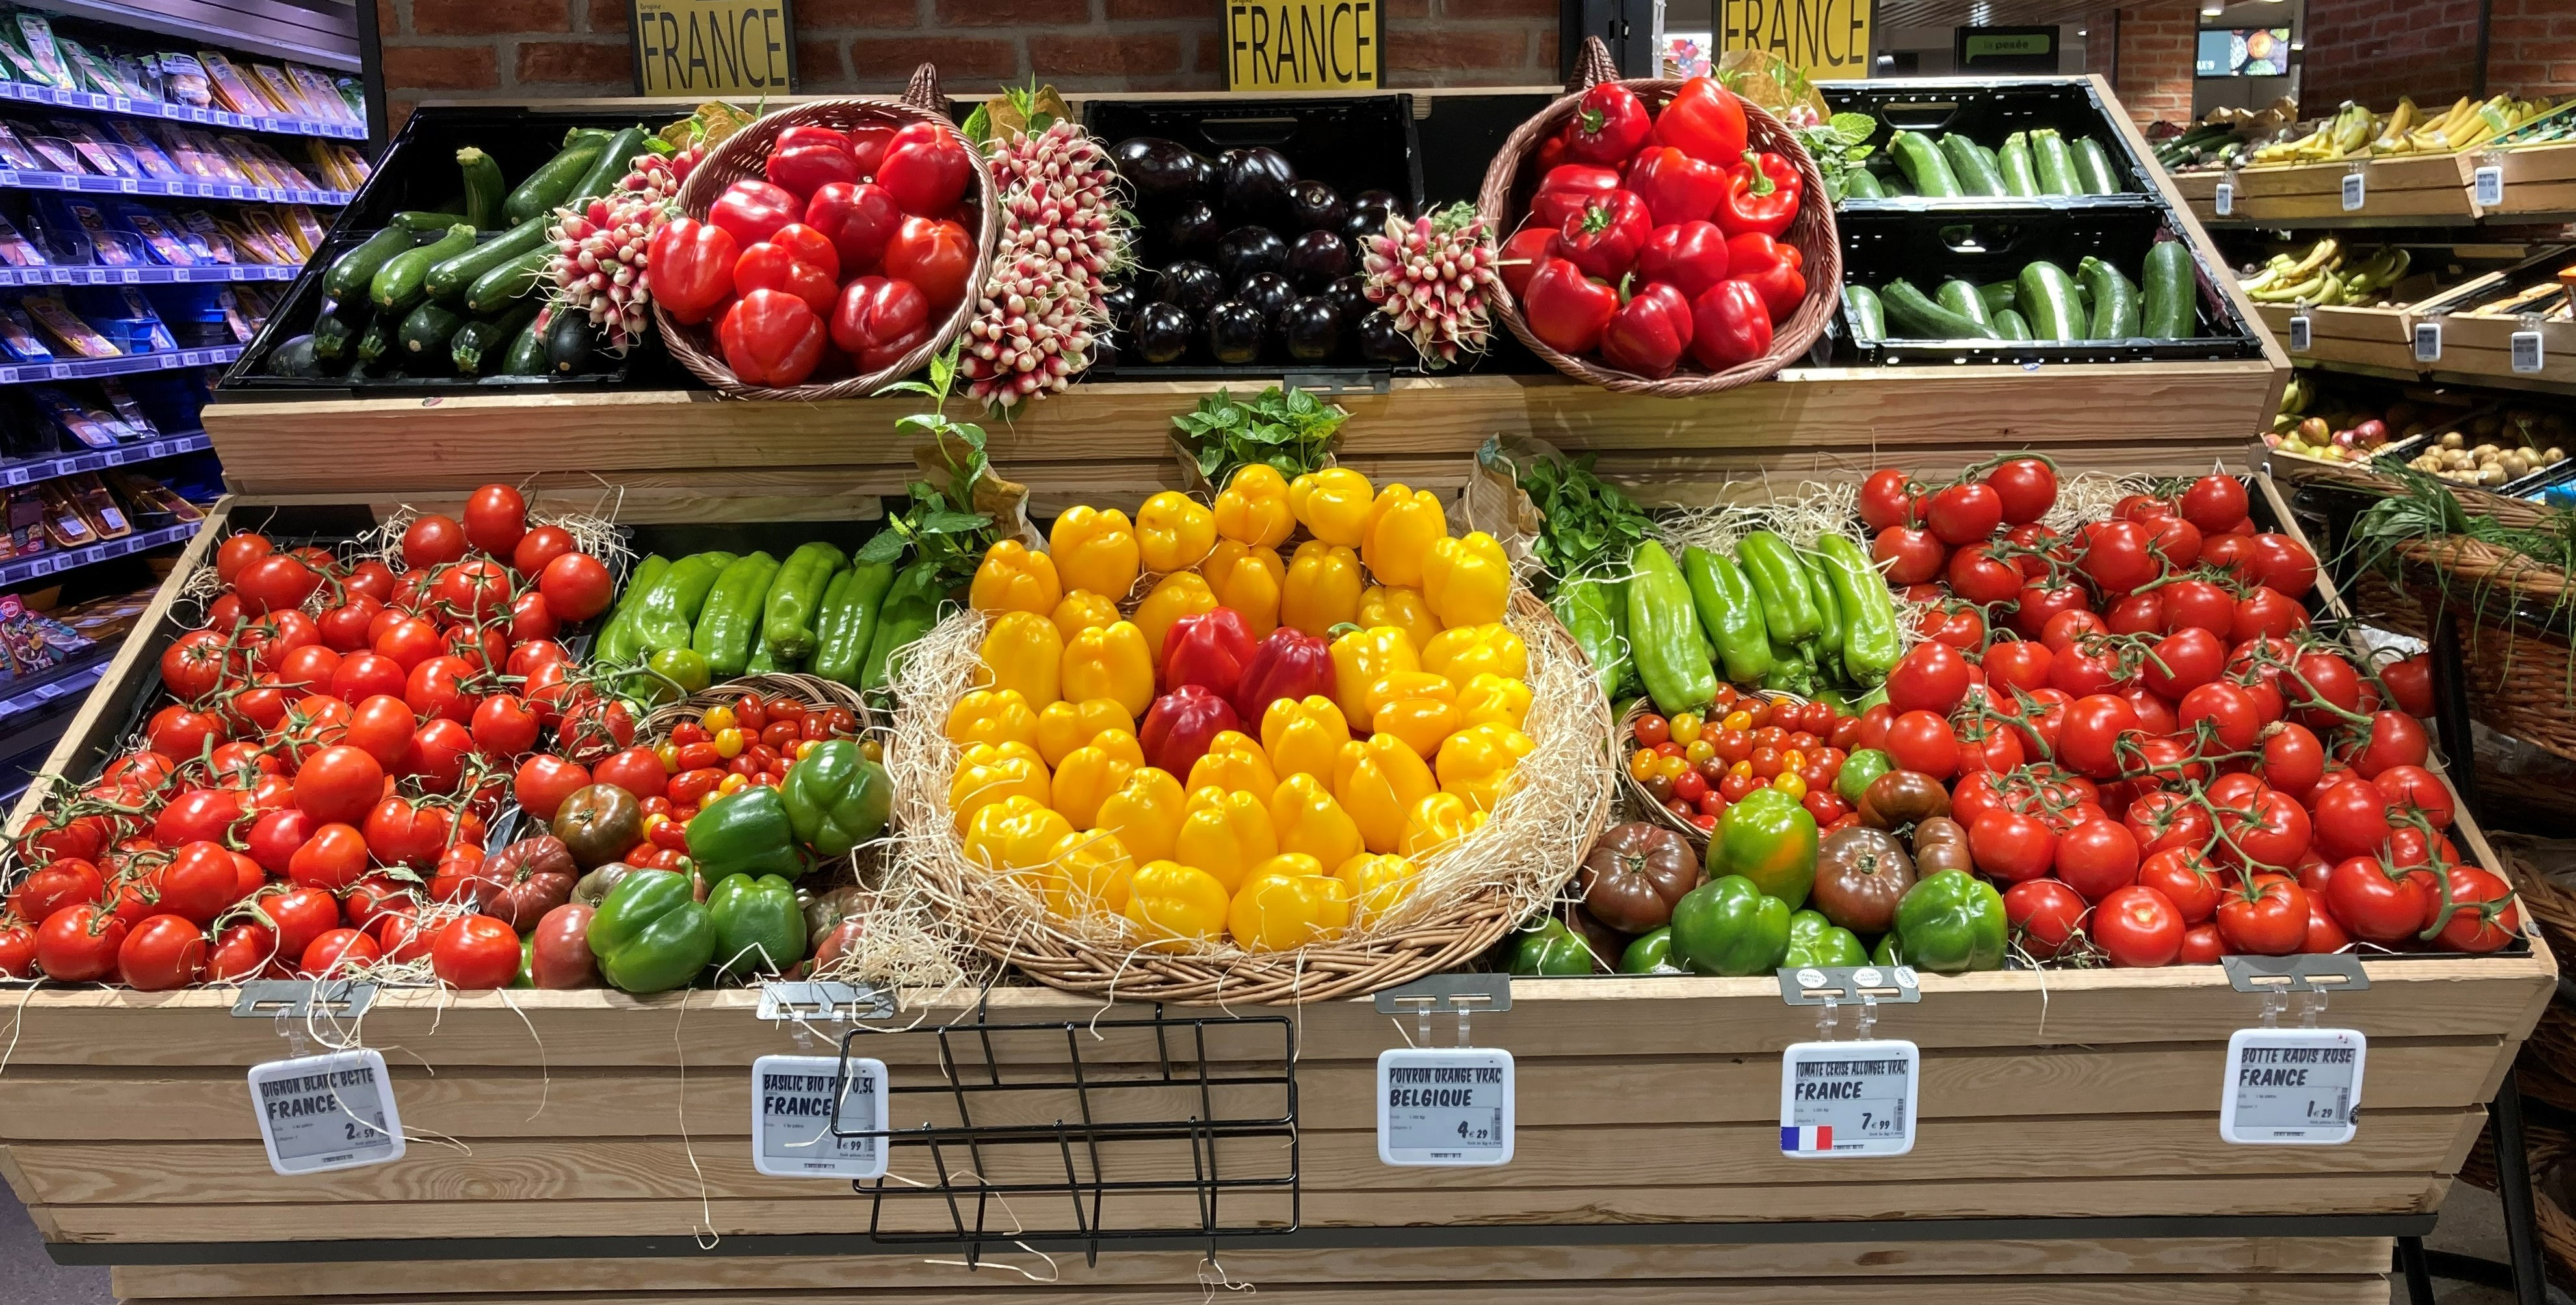 Quelles sont les clés de réussite du rayon fruits et légumes, selon Olivier  Dauvers ?